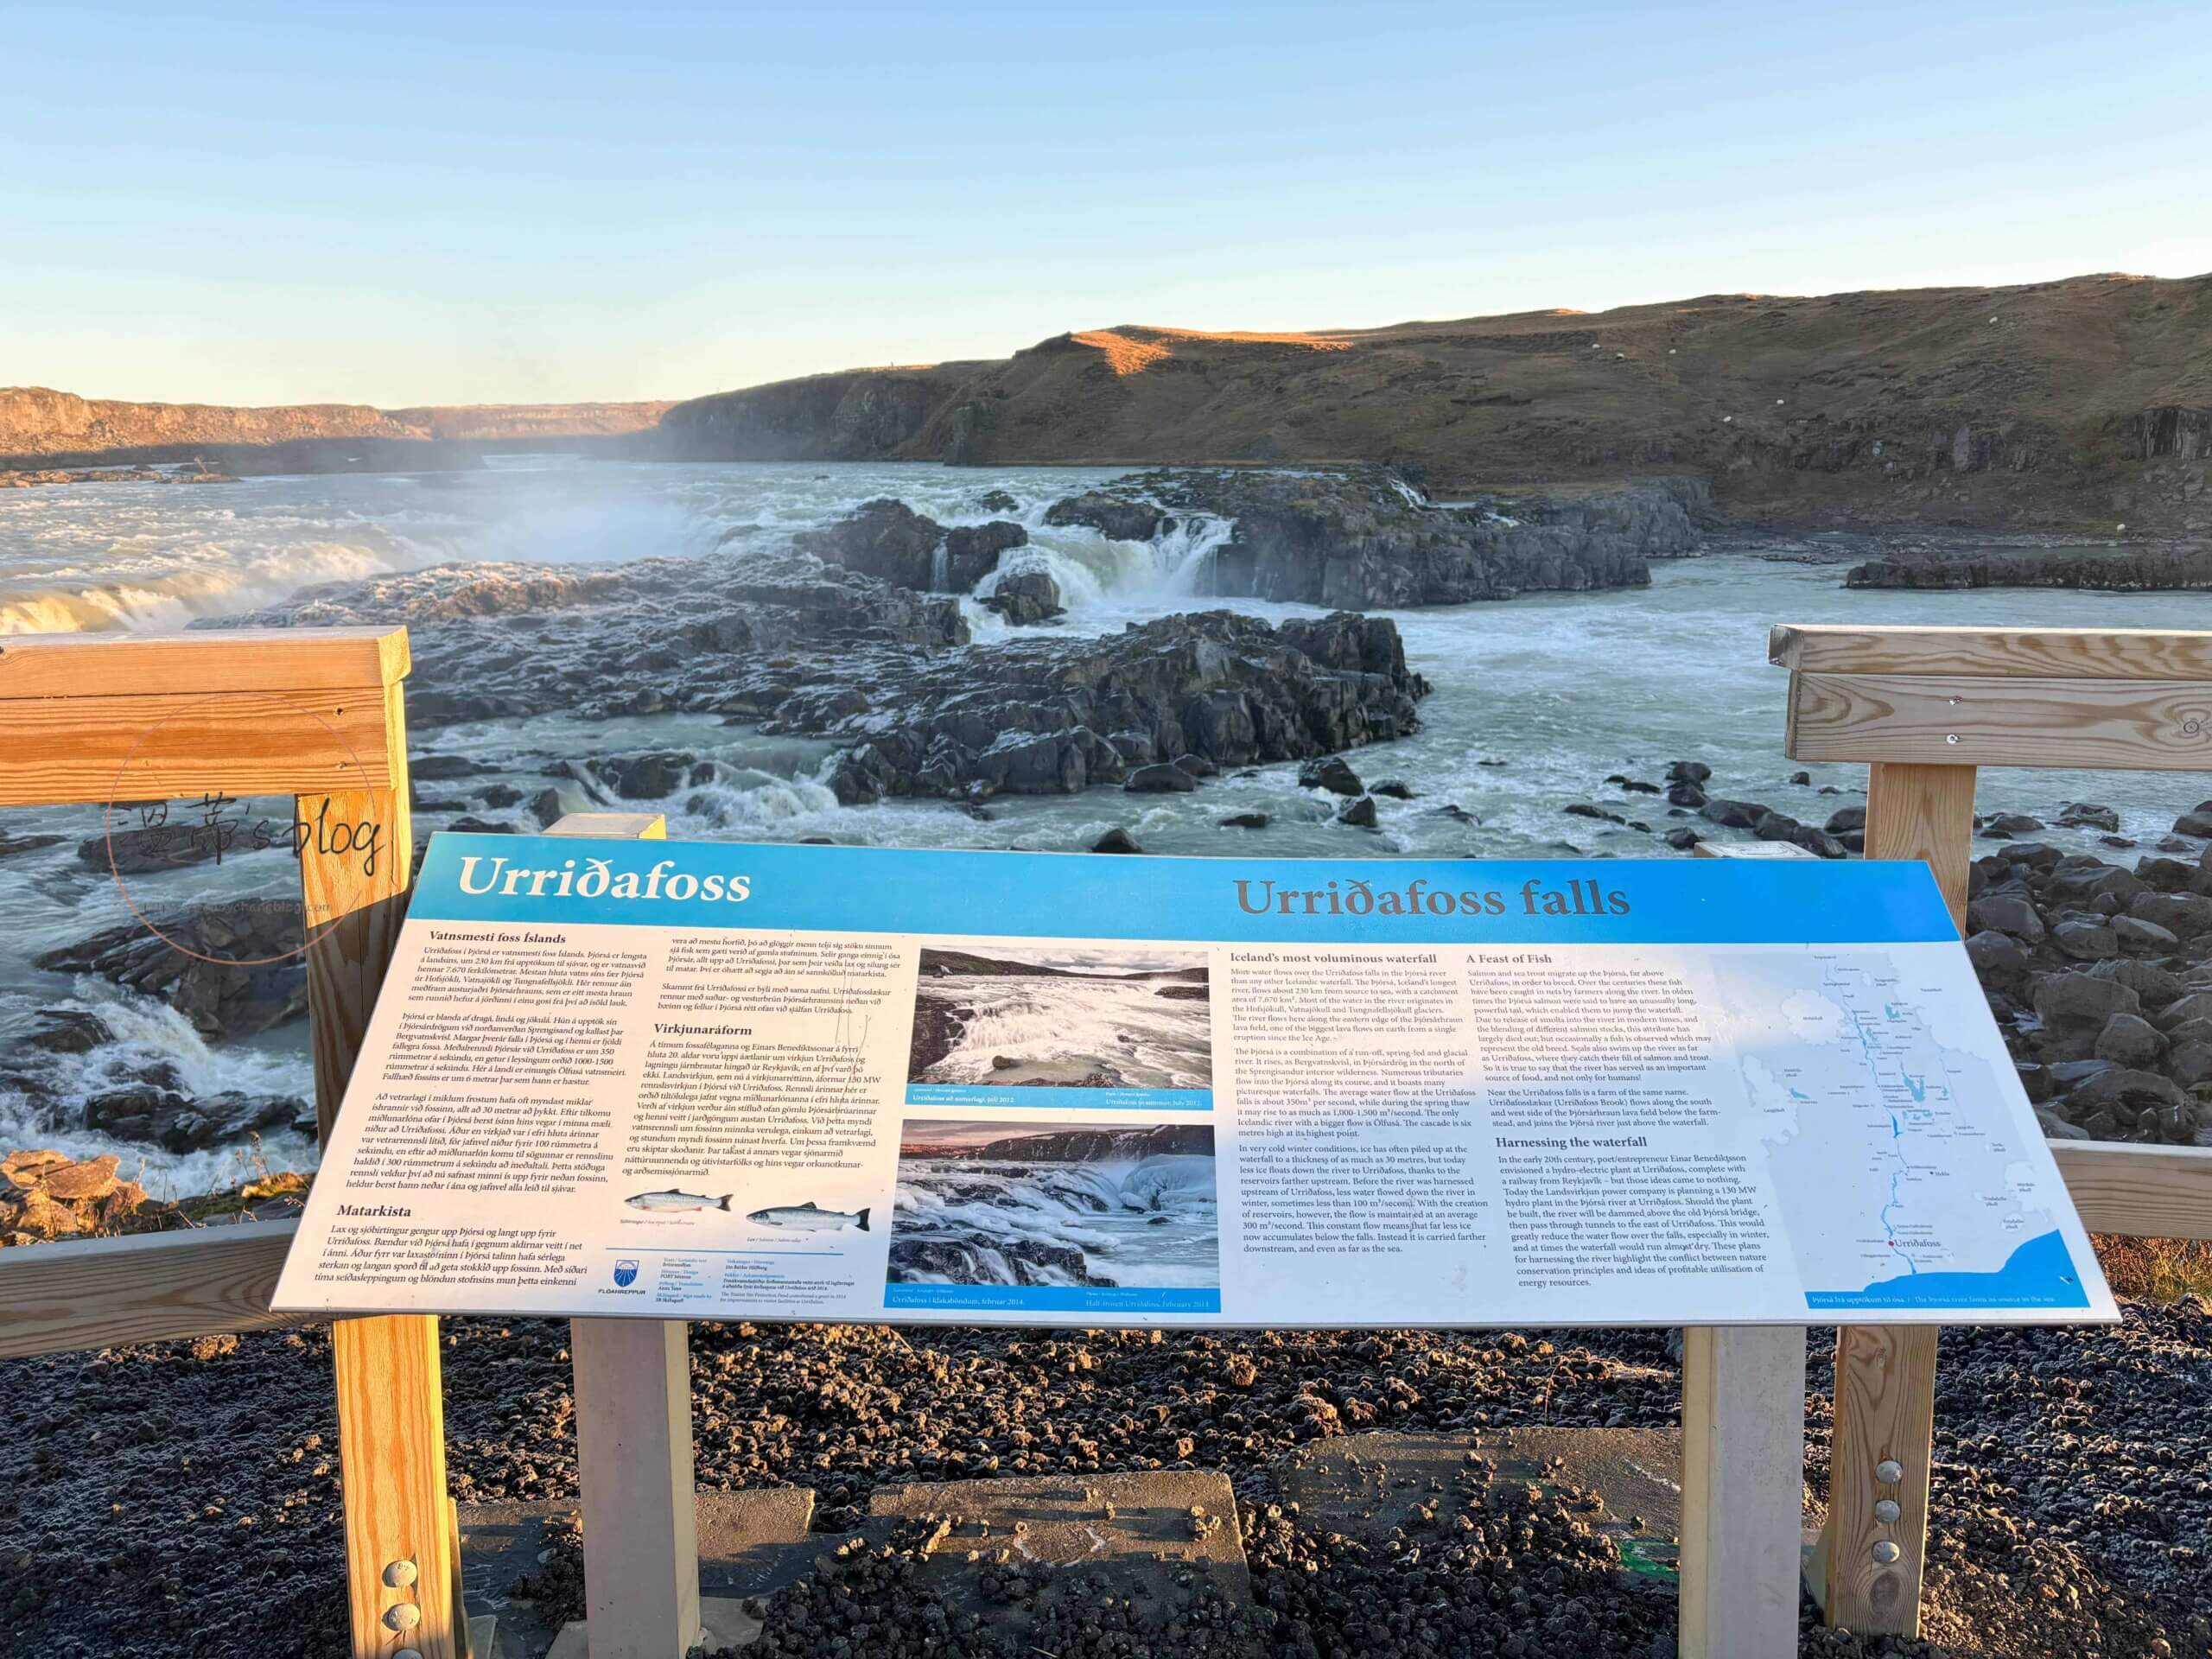 冰島旅遊景點 urriðafoss鱒魚瀑布介紹看板